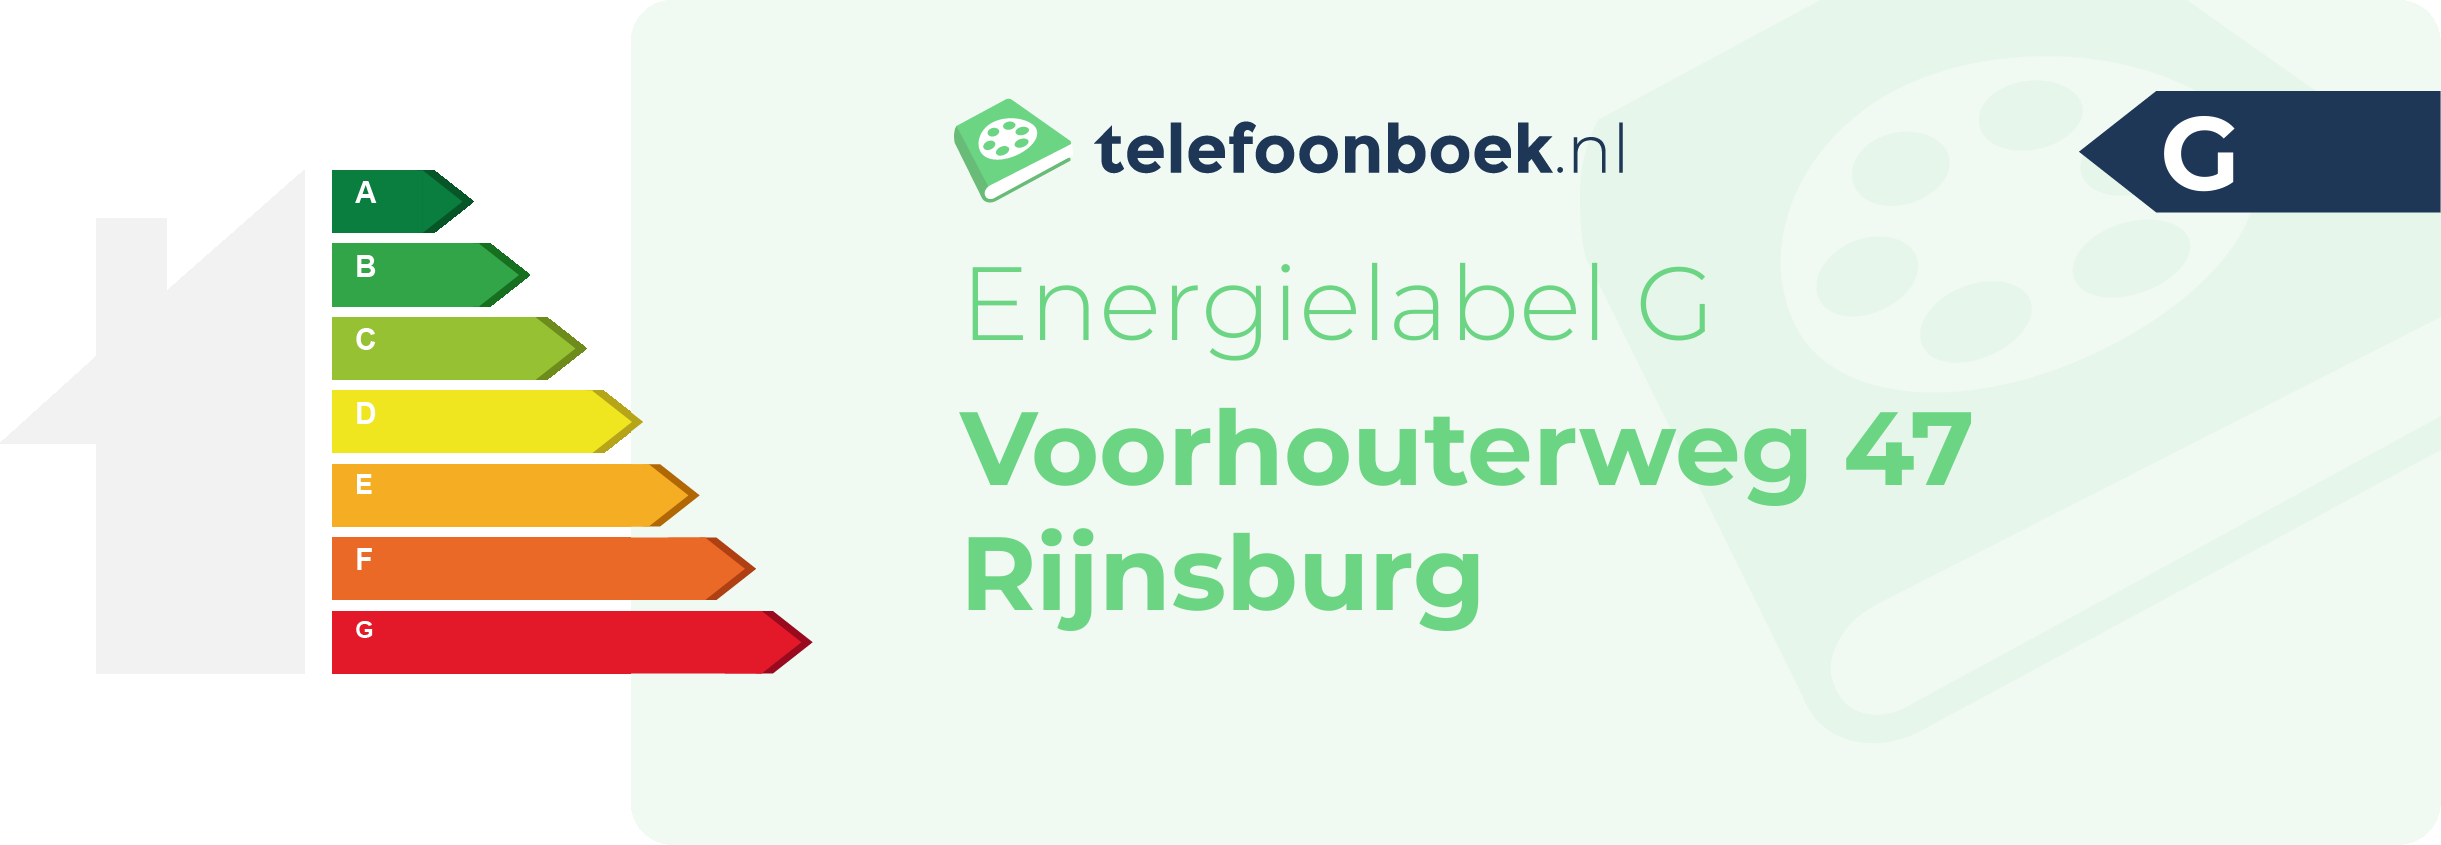 Energielabel Voorhouterweg 47 Rijnsburg